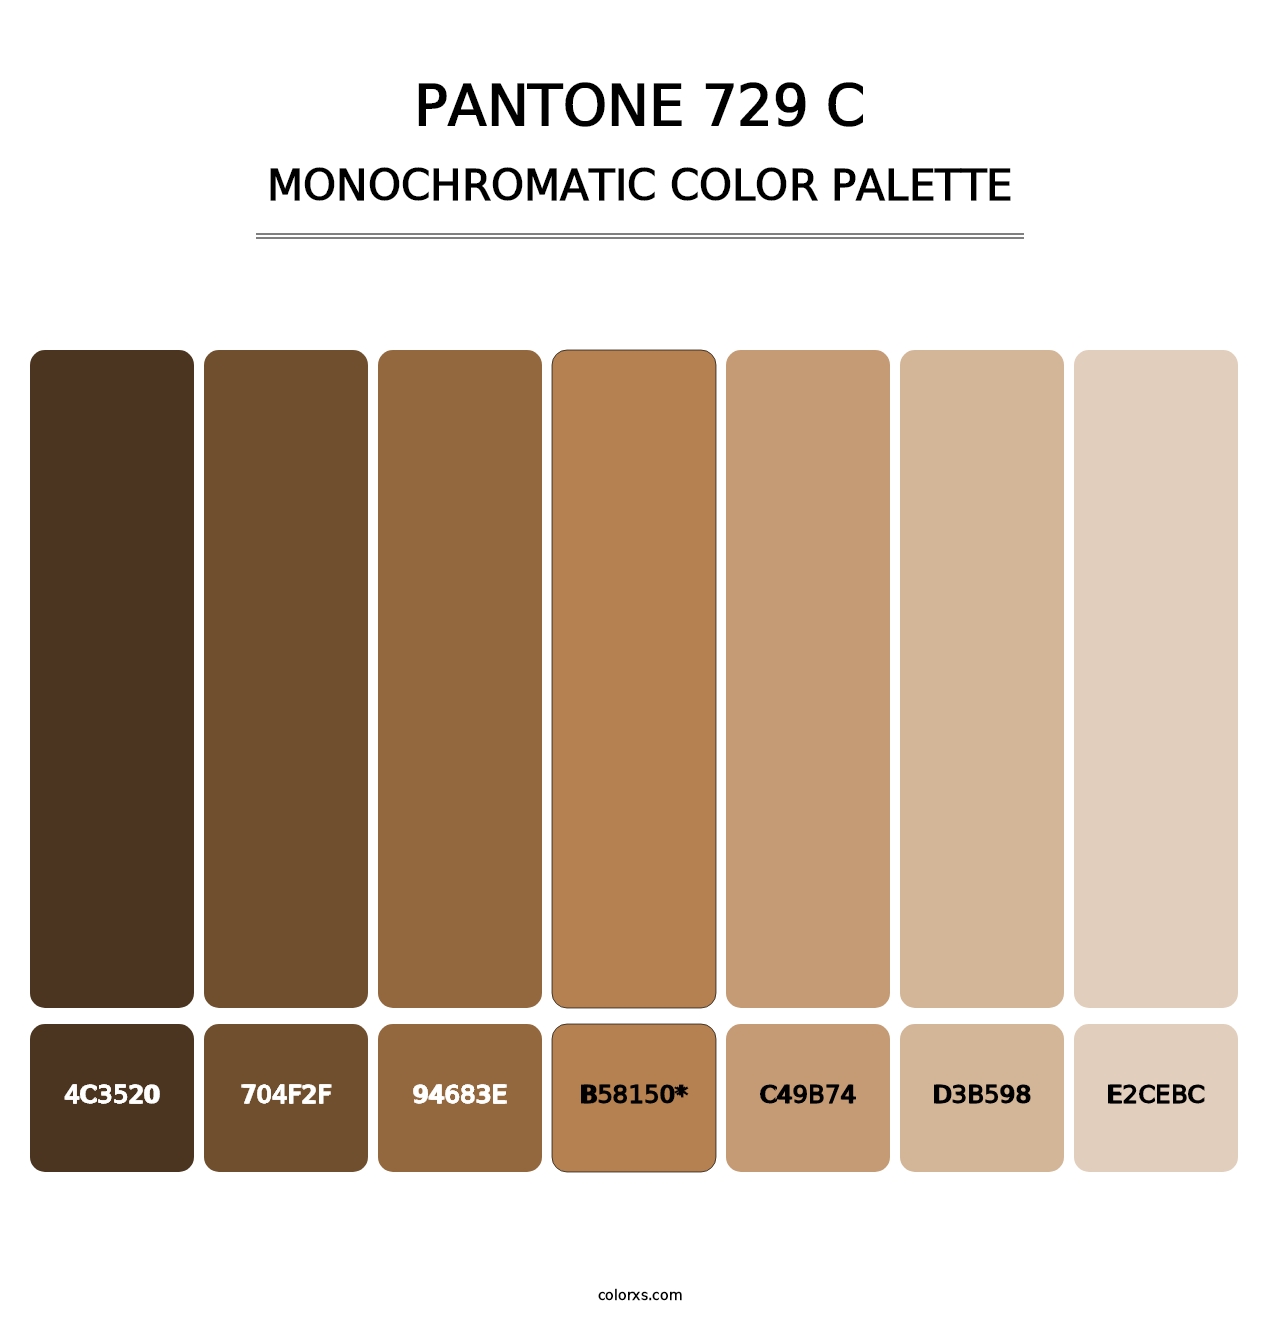 PANTONE 729 C - Monochromatic Color Palette